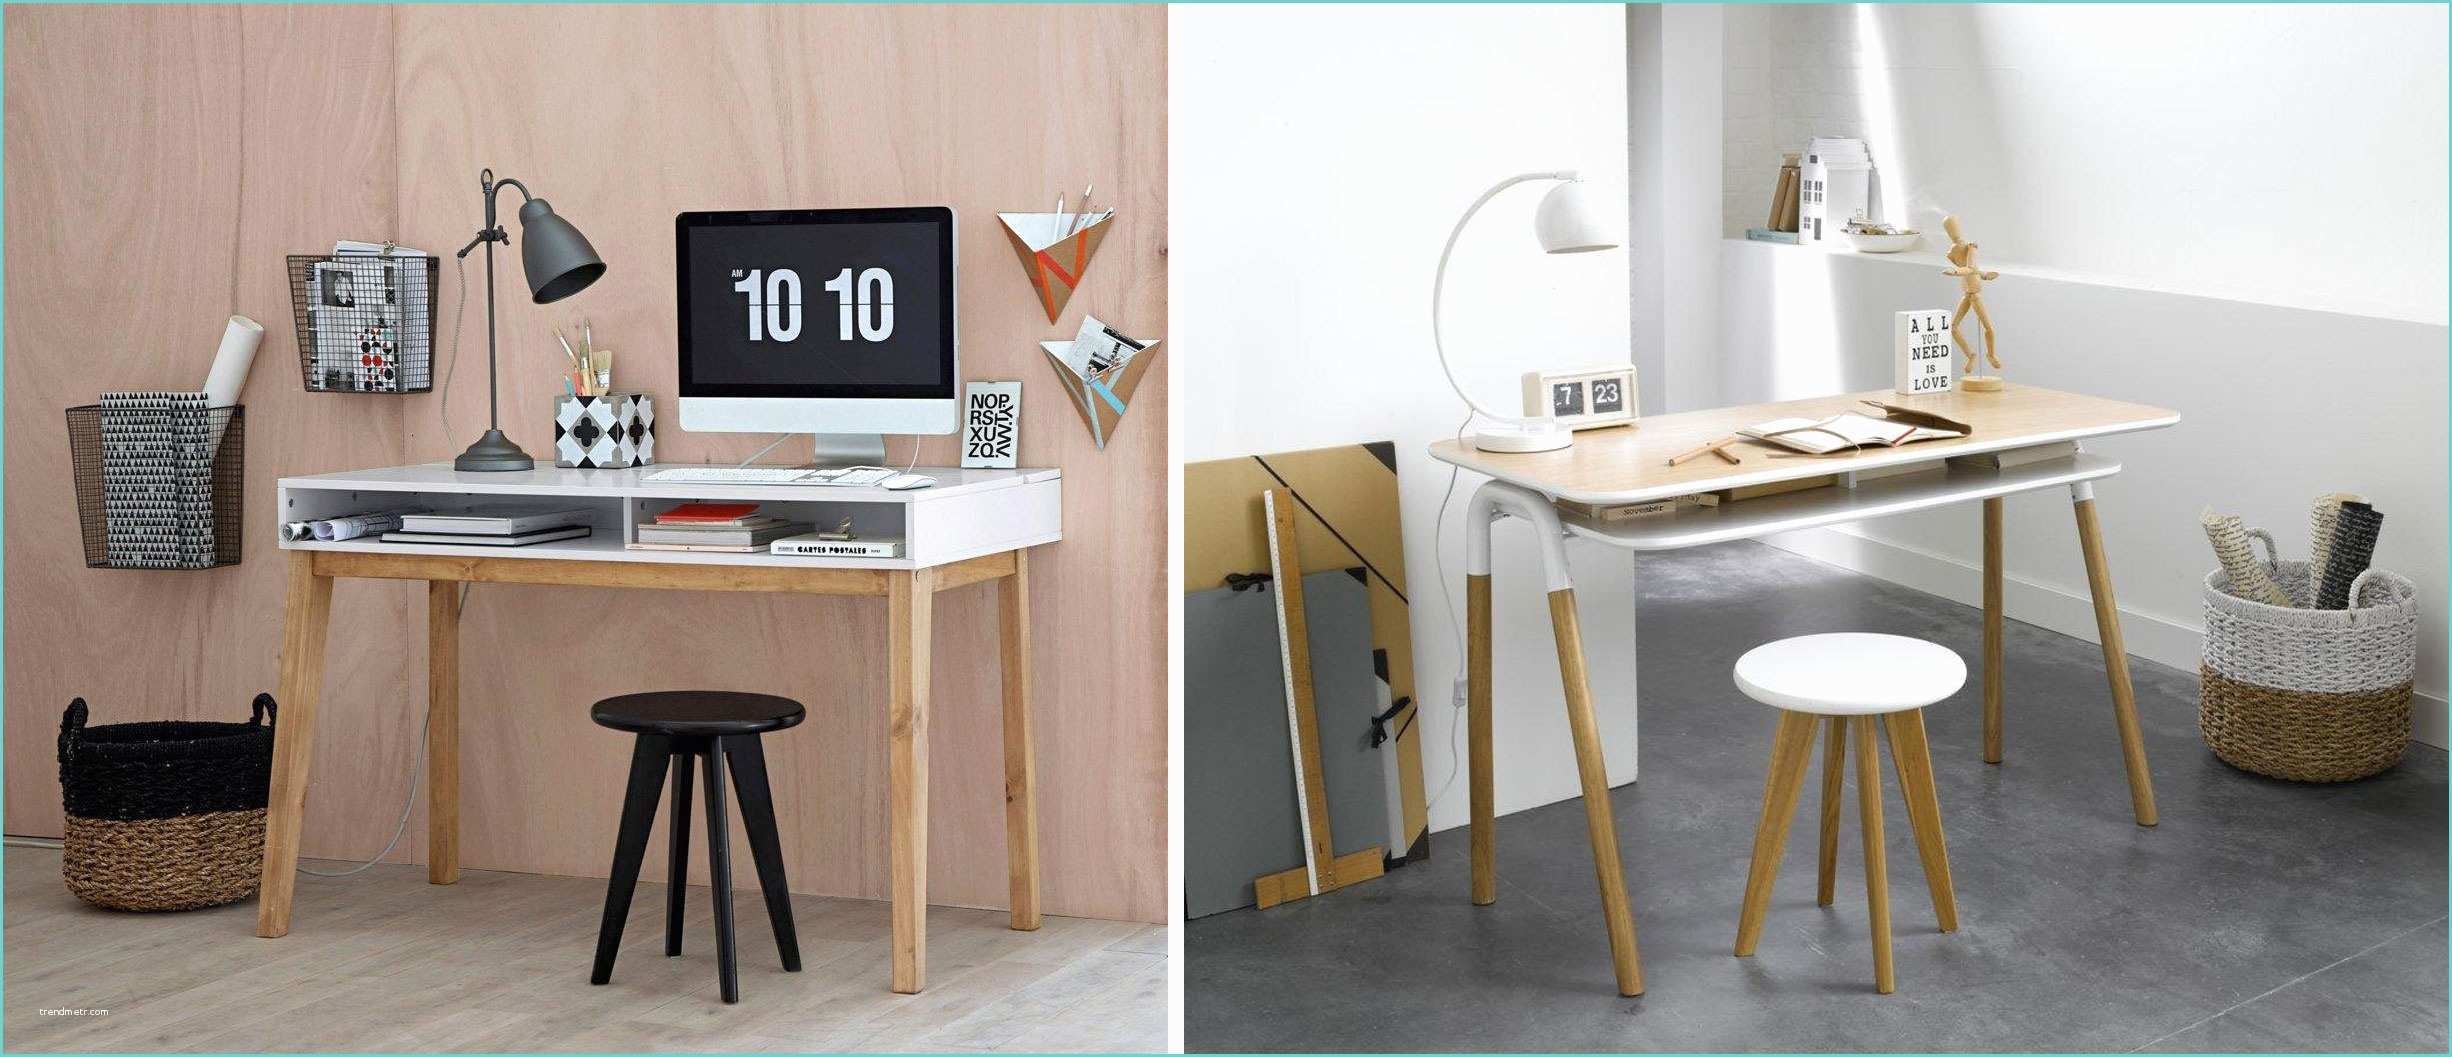 Bureau Scandinave La Redoute Bureau Design Bois Et Blanc Mobilier Entreprise Design